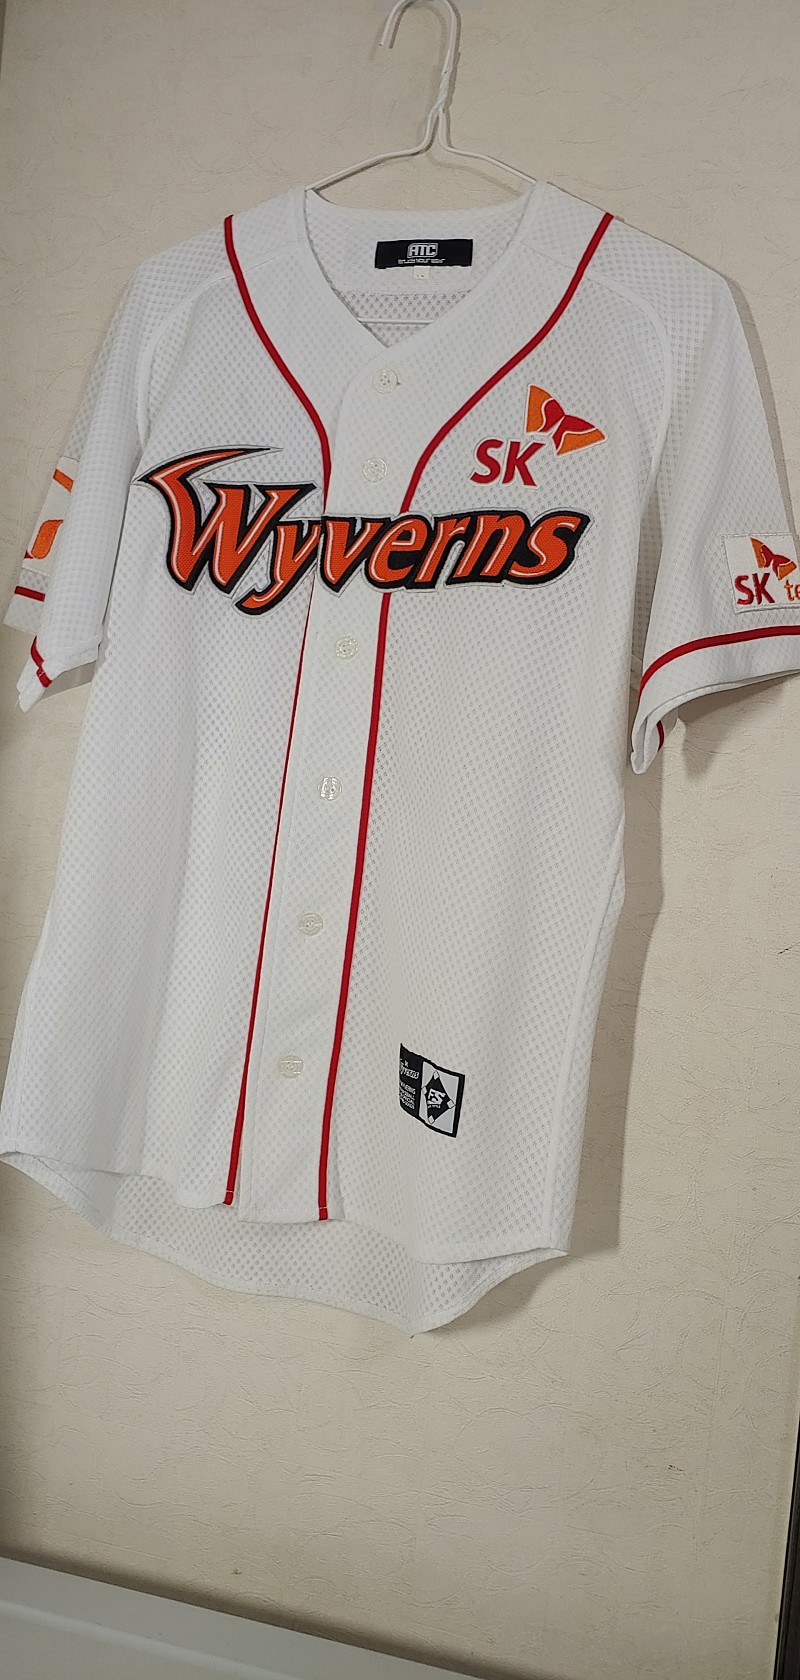 SK 와이번스 최정 어센틱 유니폼 95